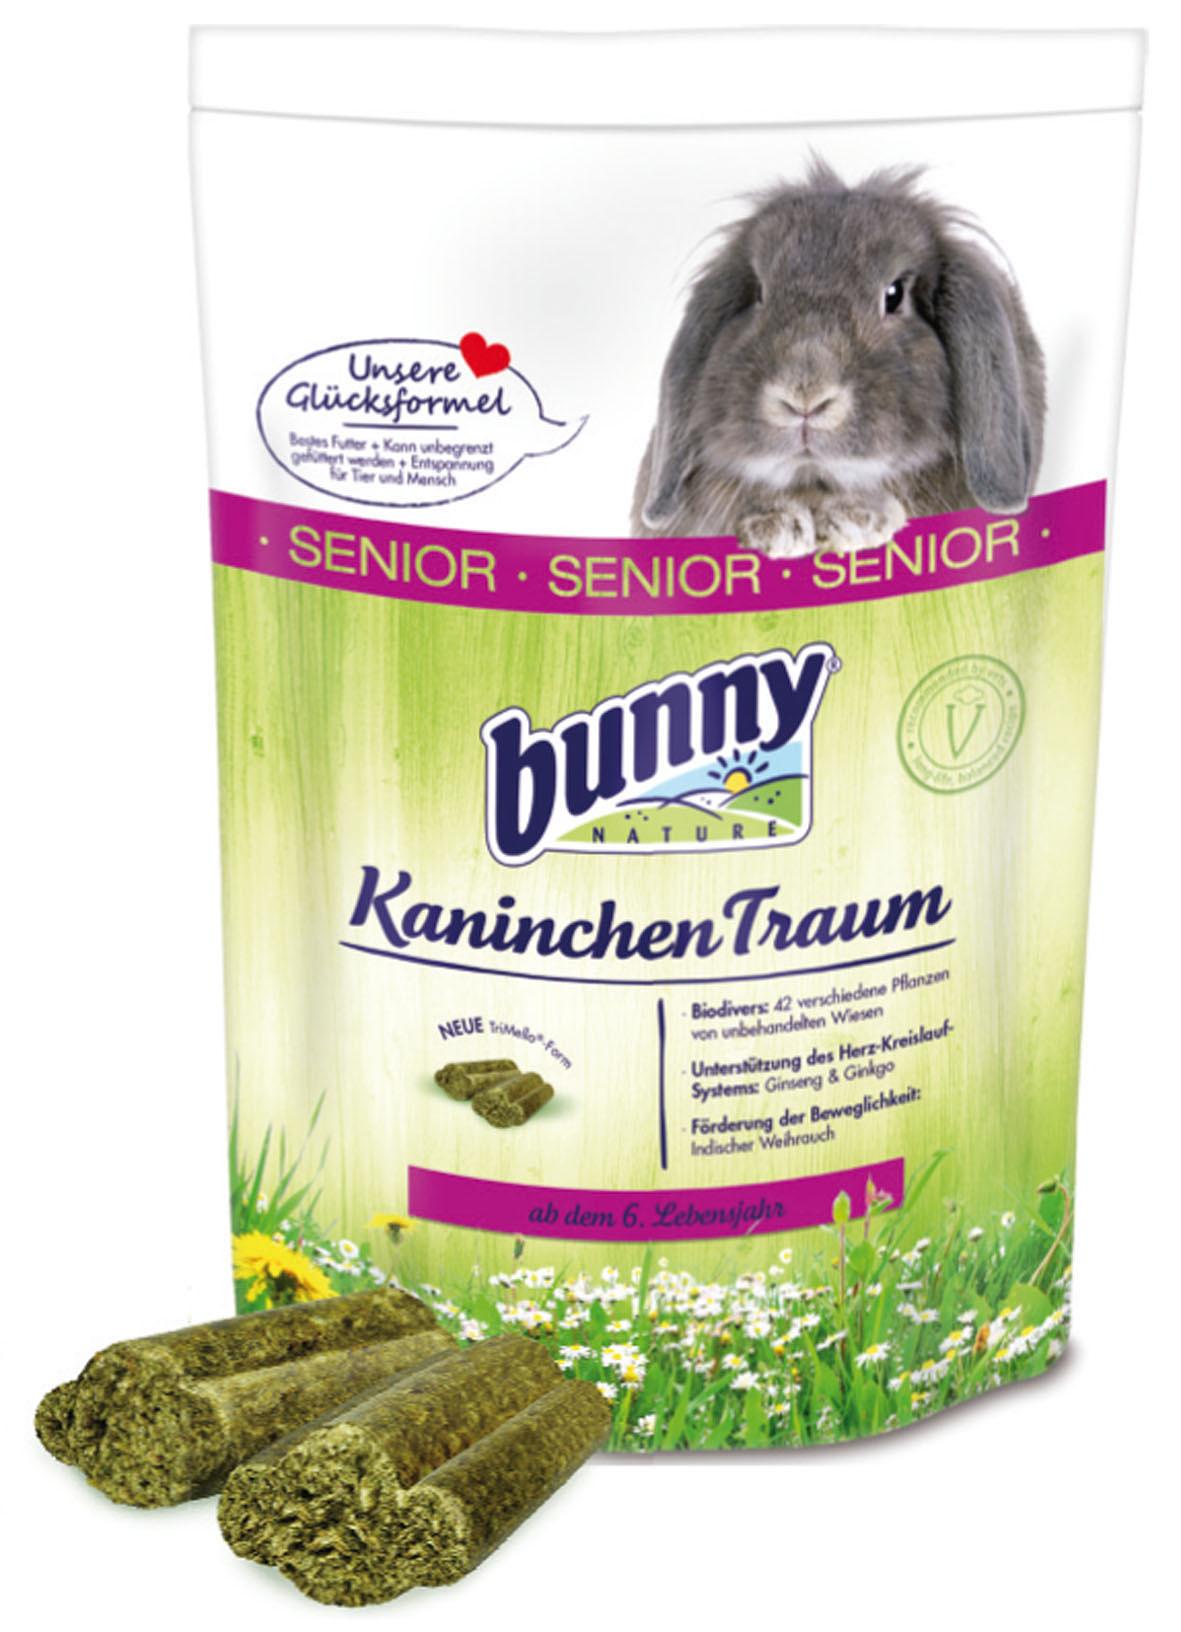 Bunny KaninchenTraum SENIOR